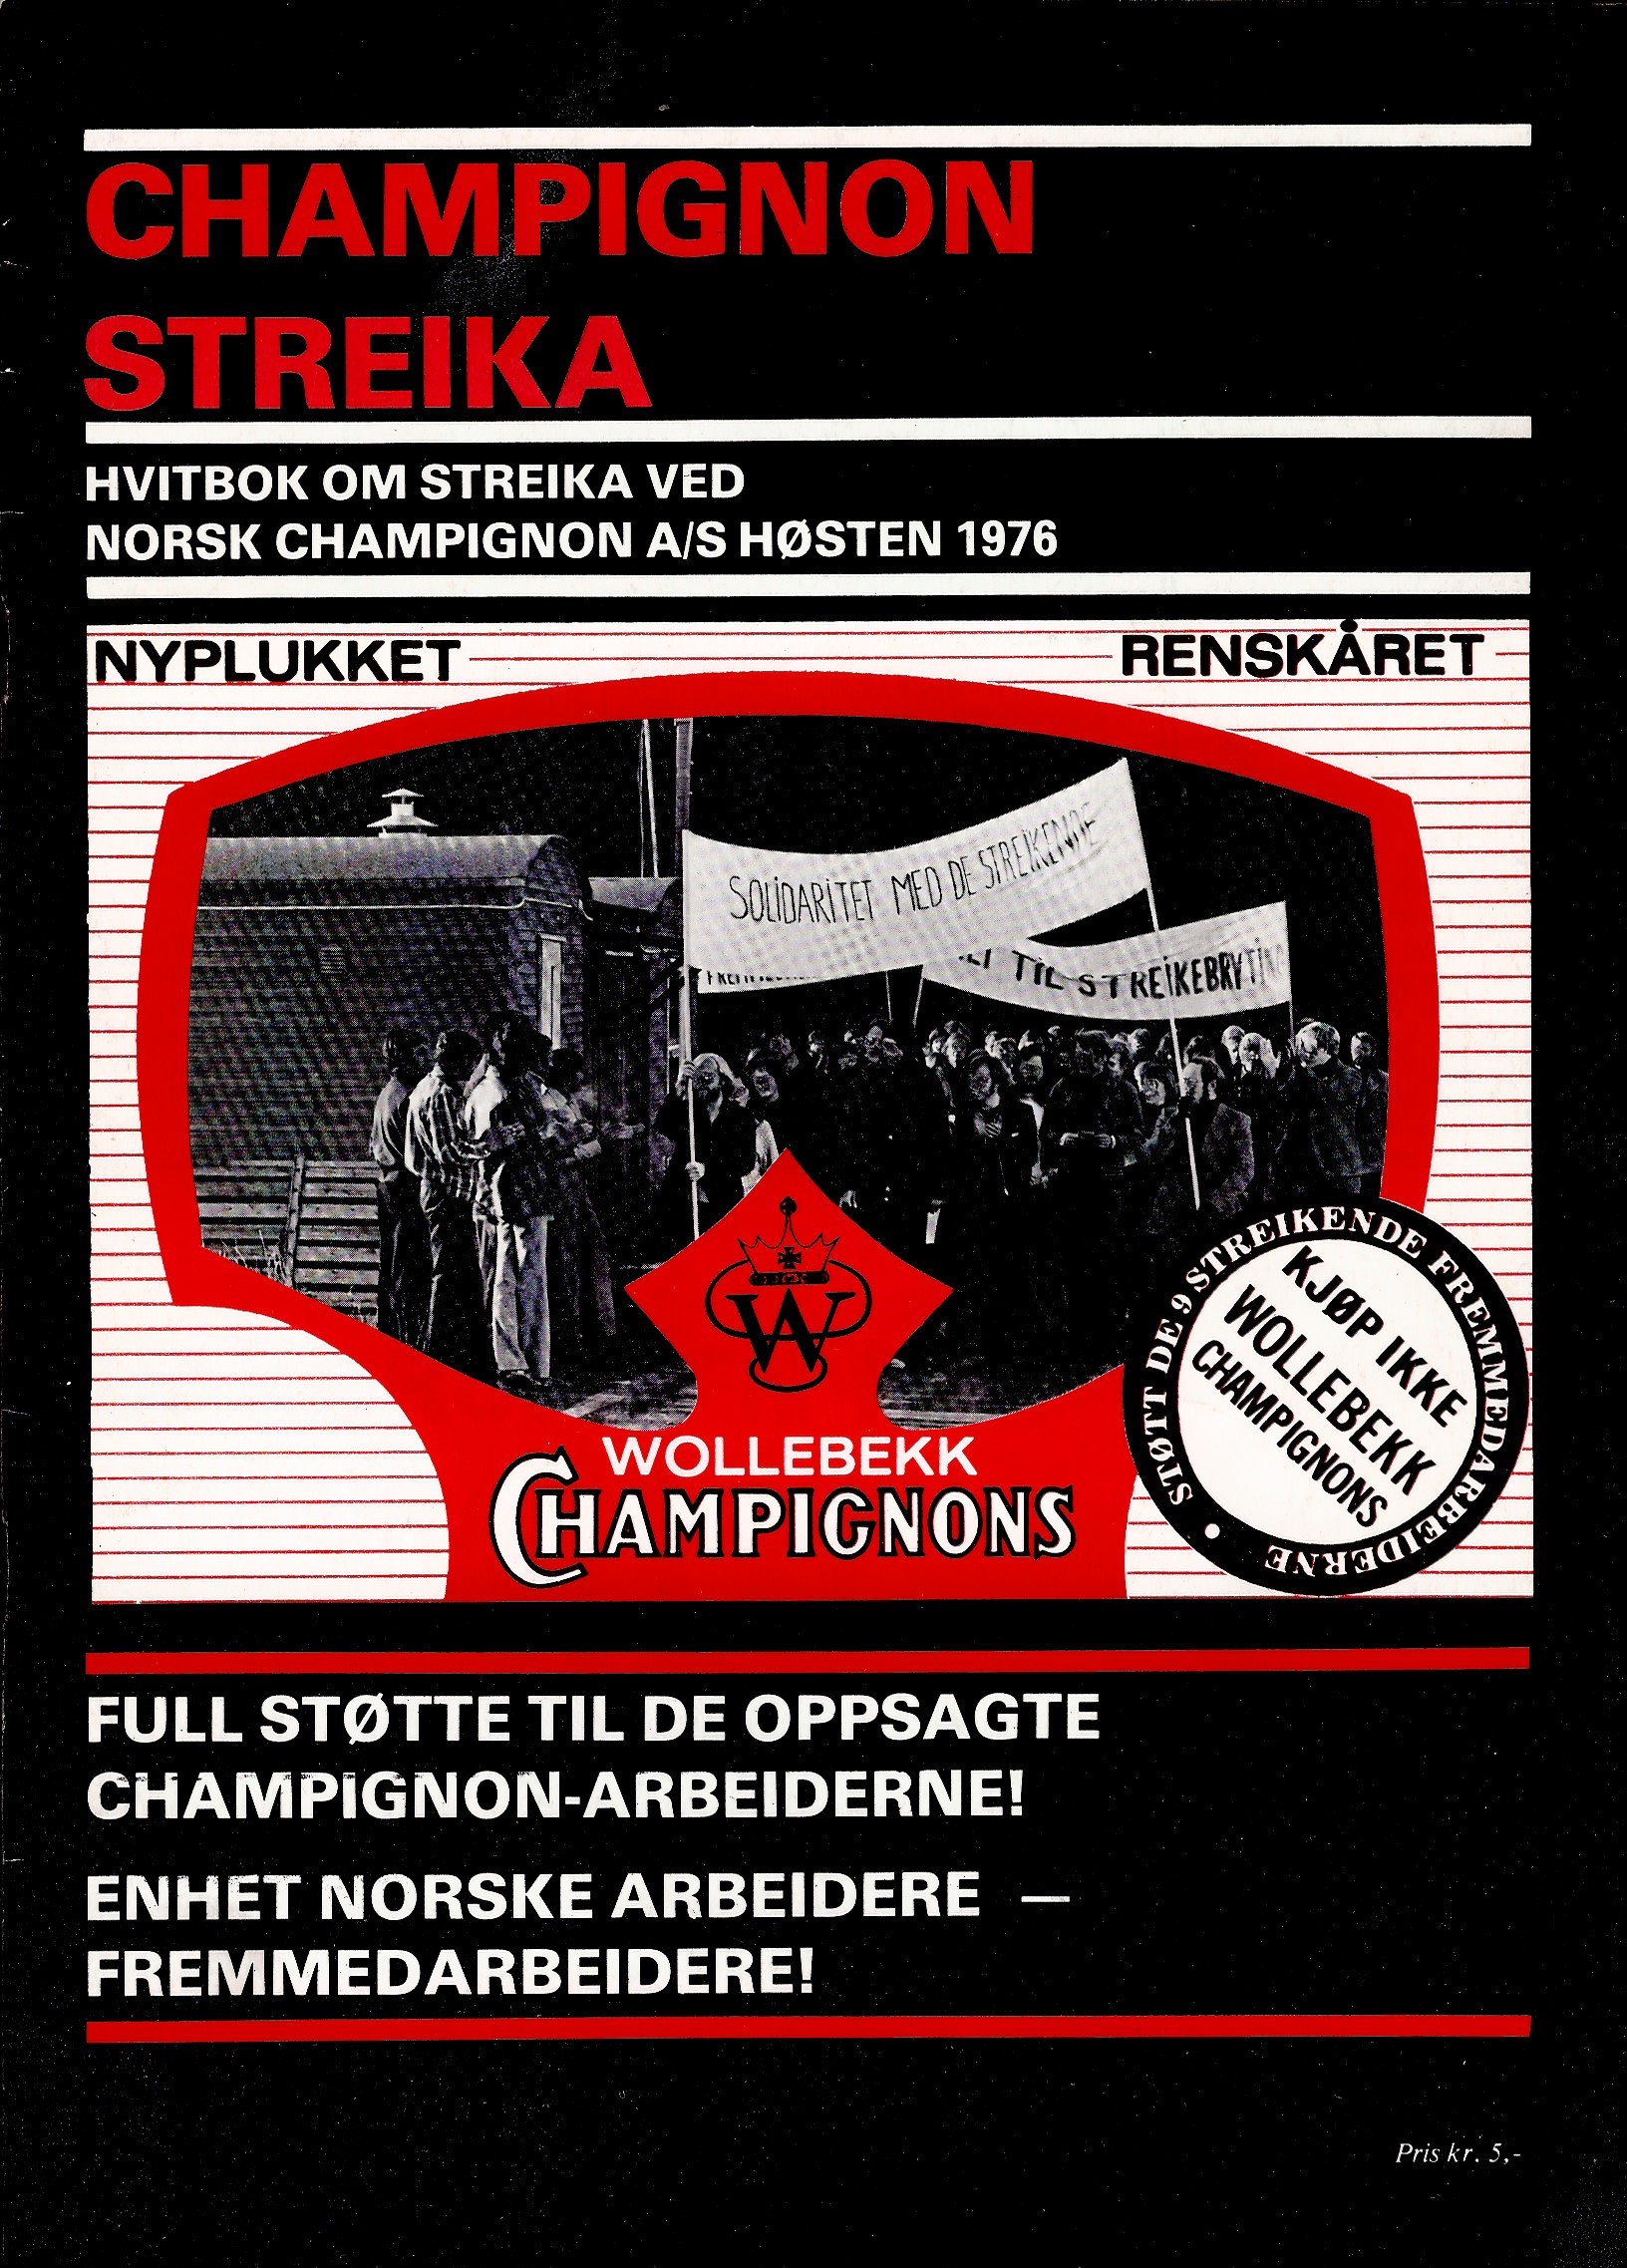 Hvitbok om Chamignon-streika